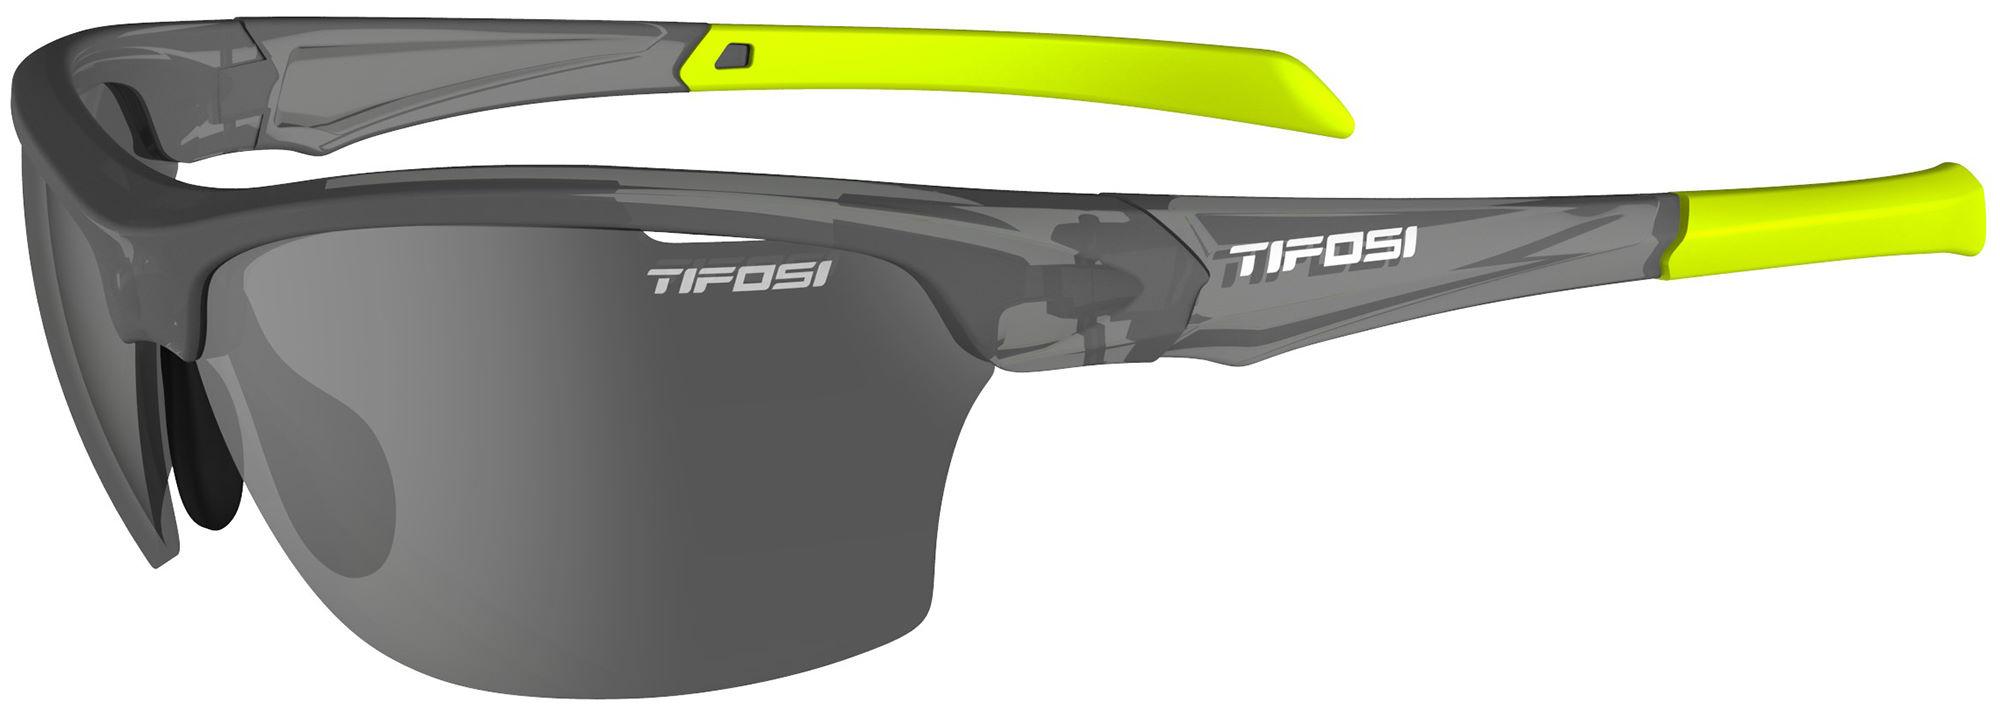 Tifosi Eyewear Intense Single Lens Sunglasses 2022  Matte Smoke